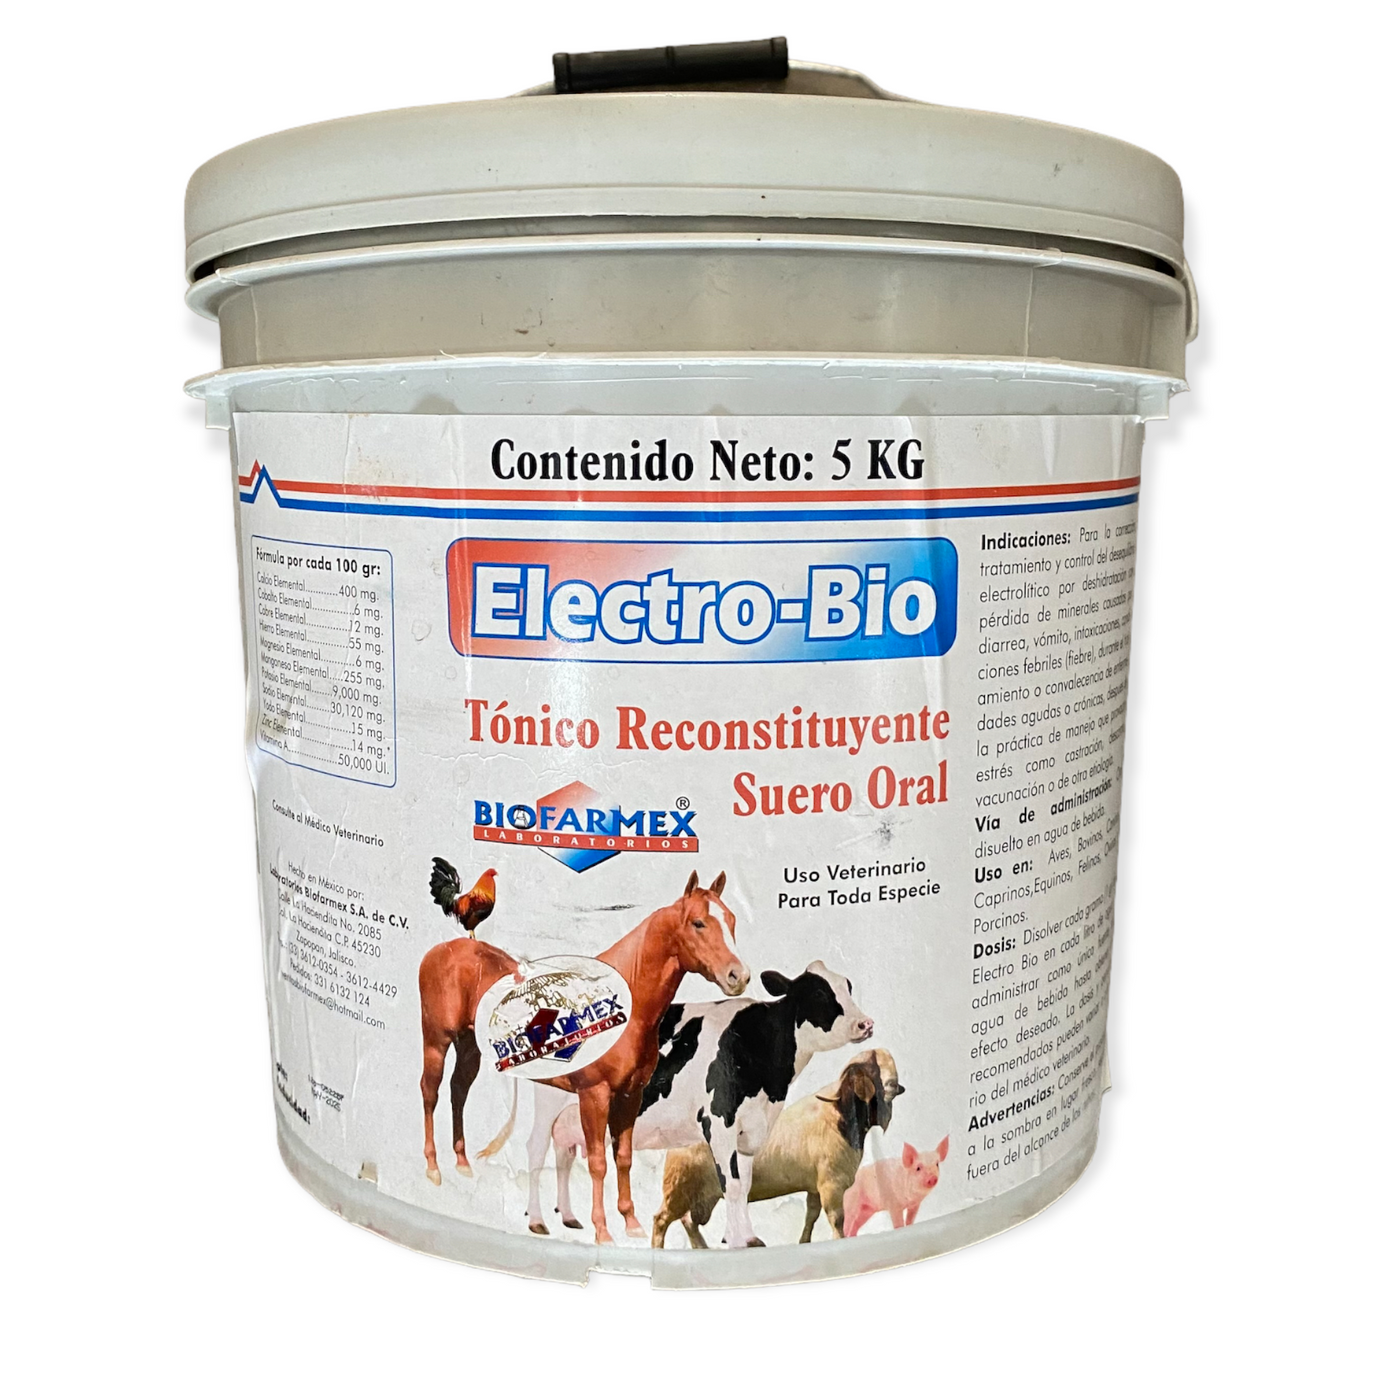 Electro-Bio Tonico Reconstituyente Suero Oral 5 Kg